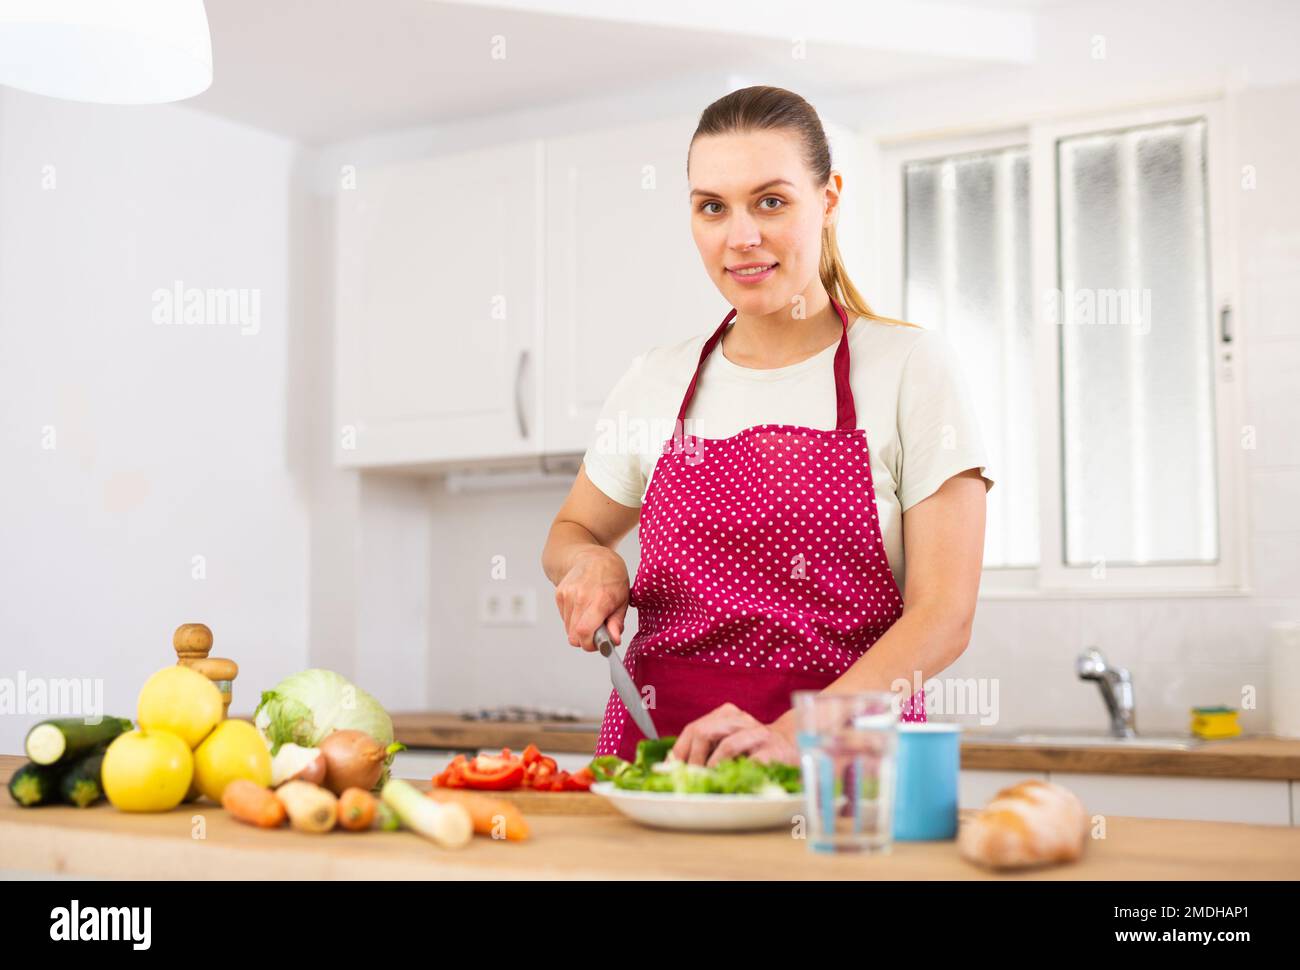 La donna positiva sta tagliando le verdure per l'insalata in cucina nel paese Foto Stock